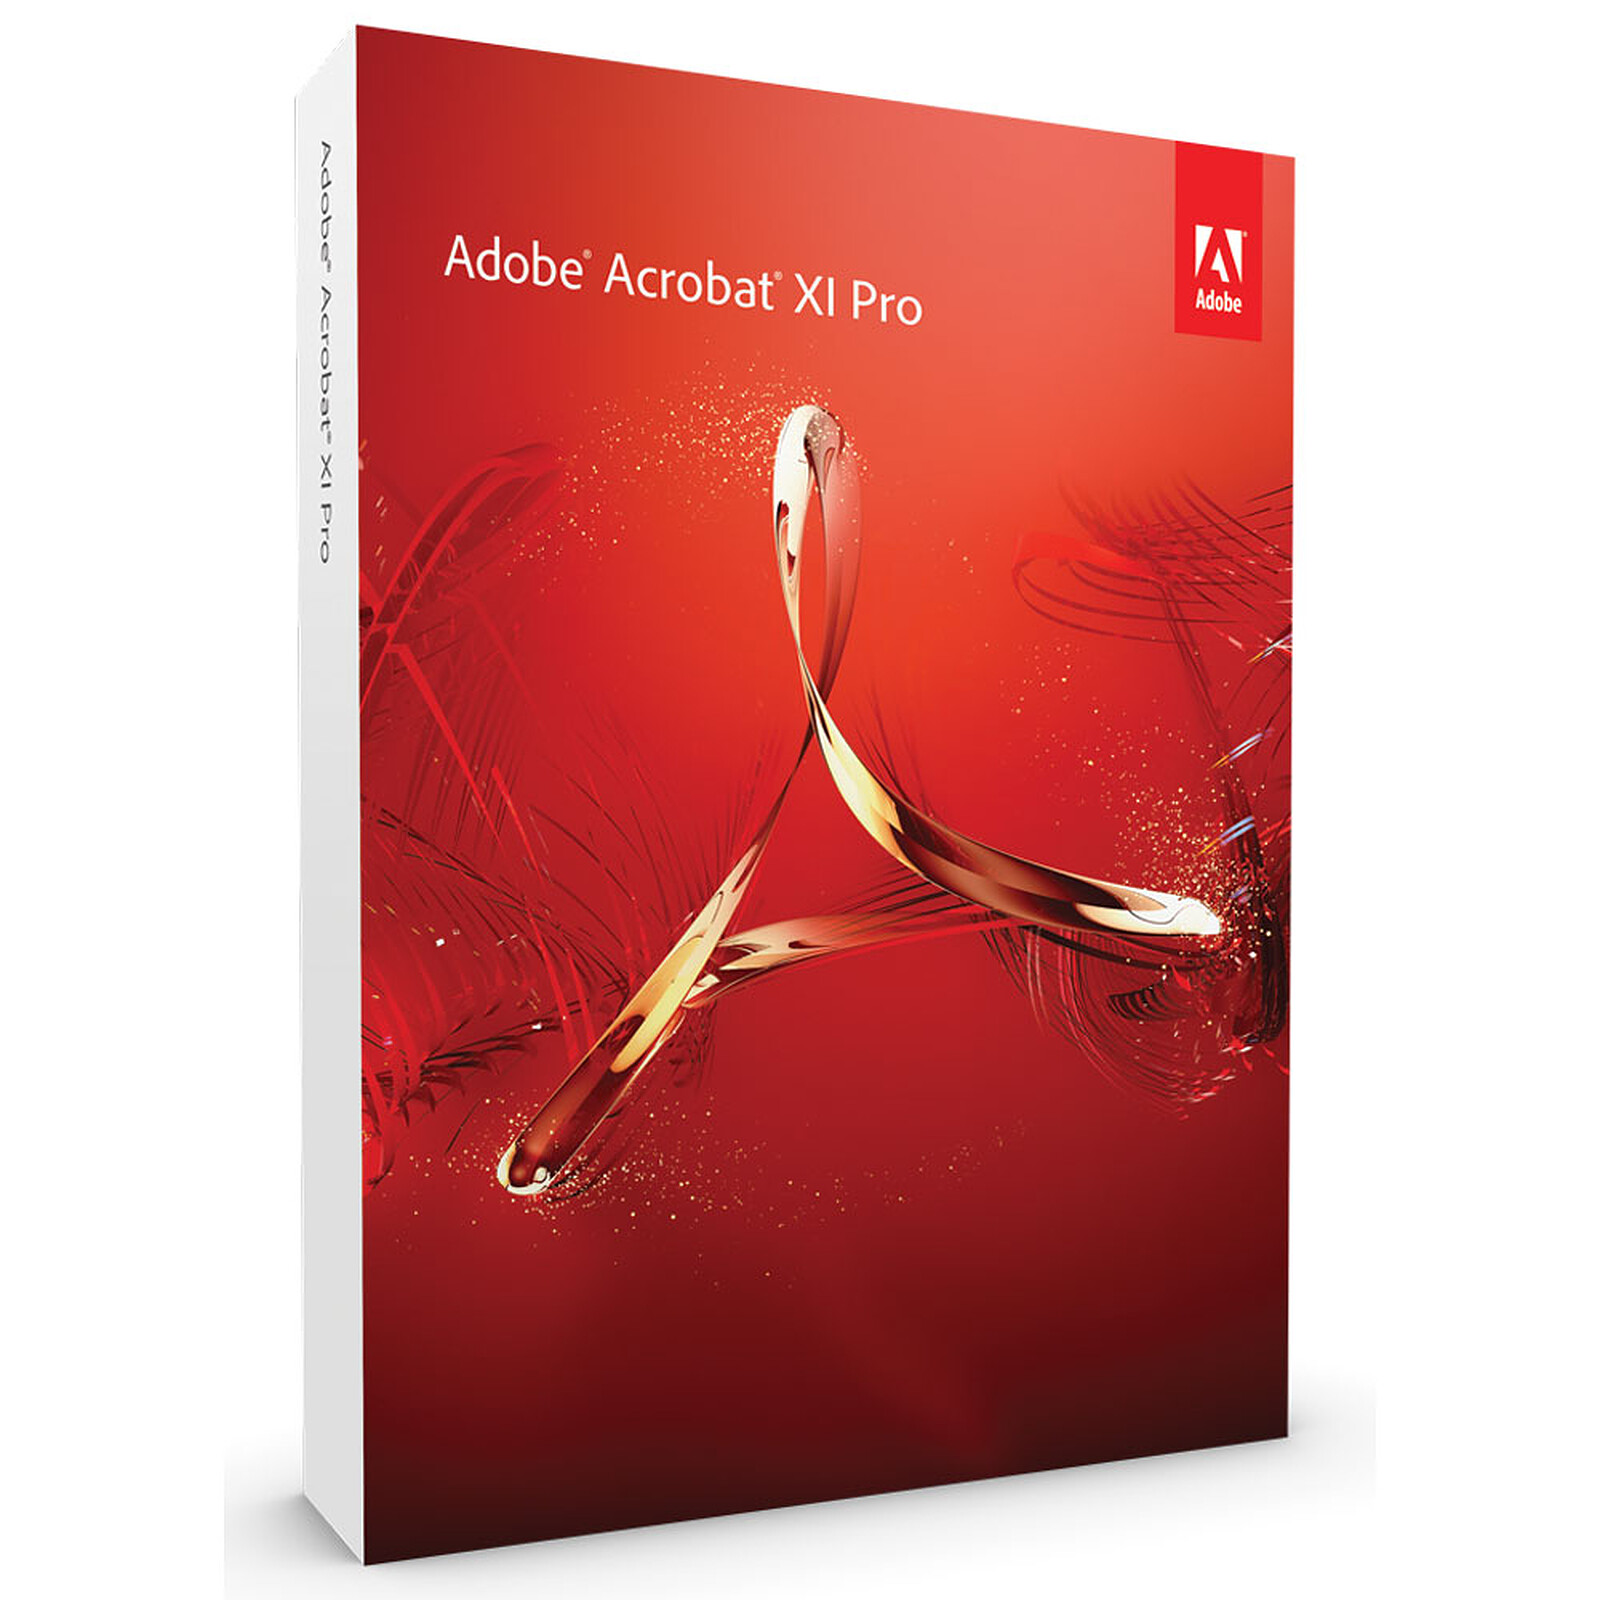 Adobe Acrobat XI Pro Free Download